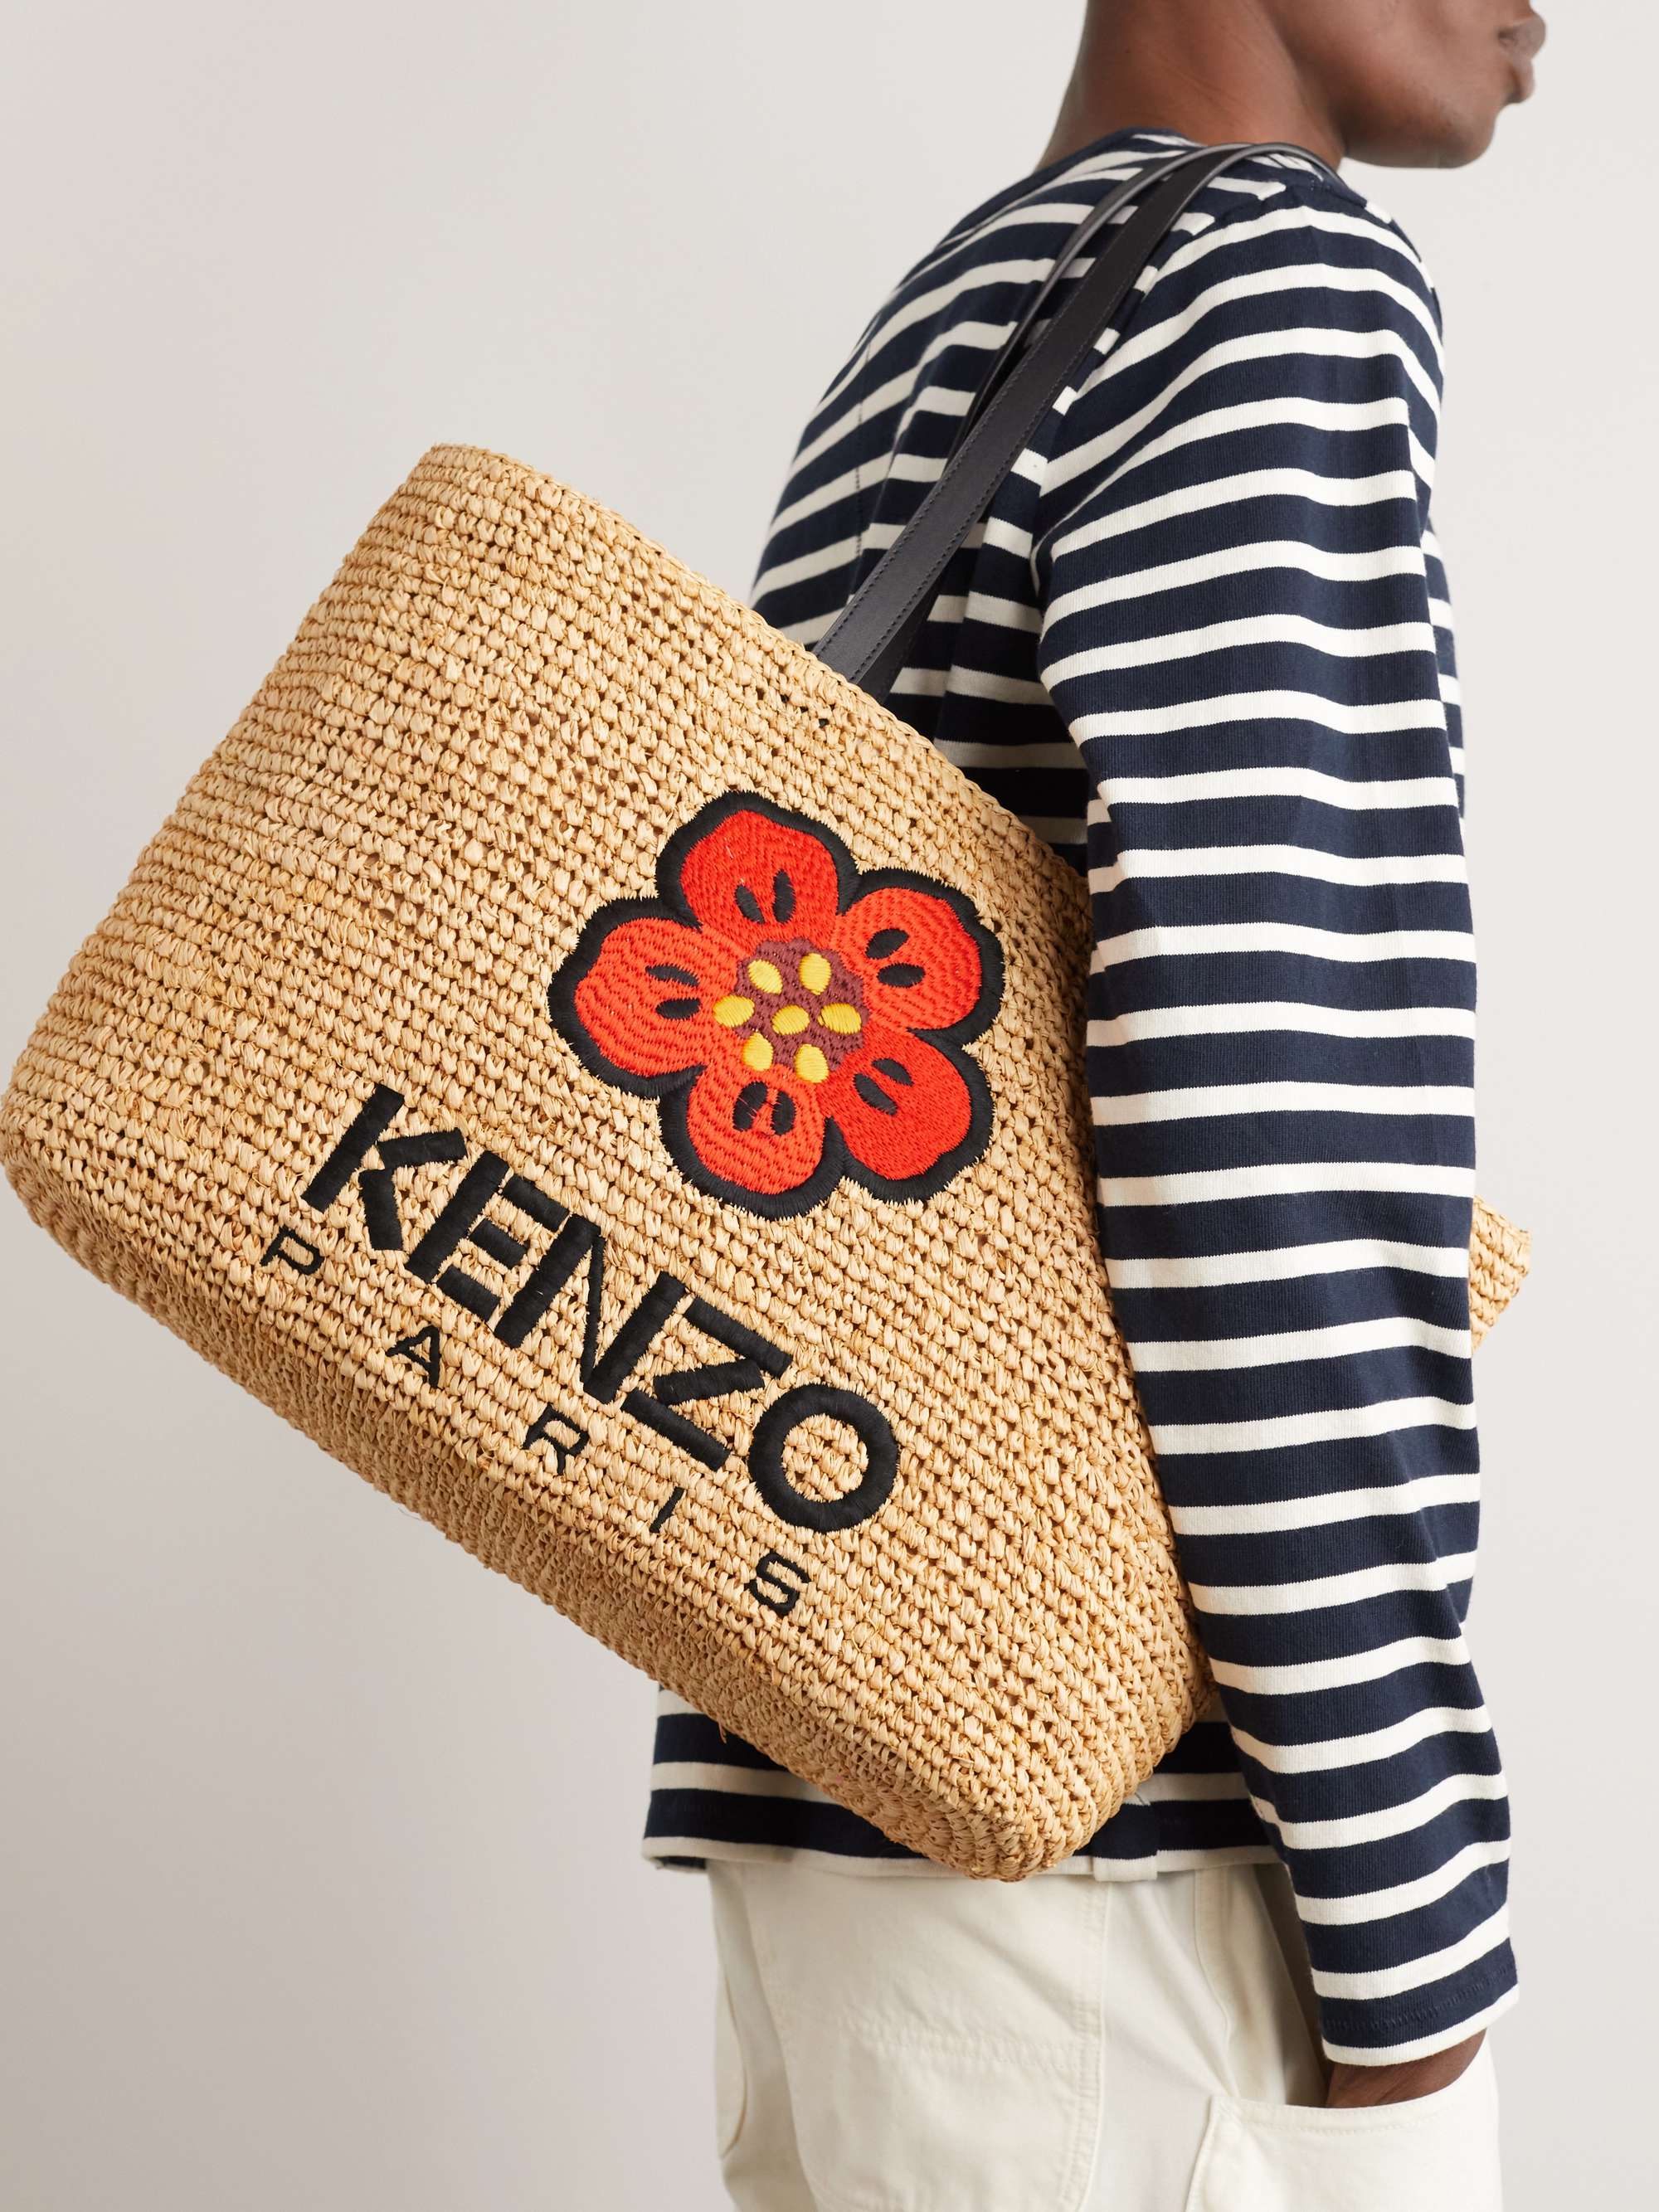 KENZO Large Embroidered Leather-Trimmed Raffia Tote Bag for Men | MR PORTER